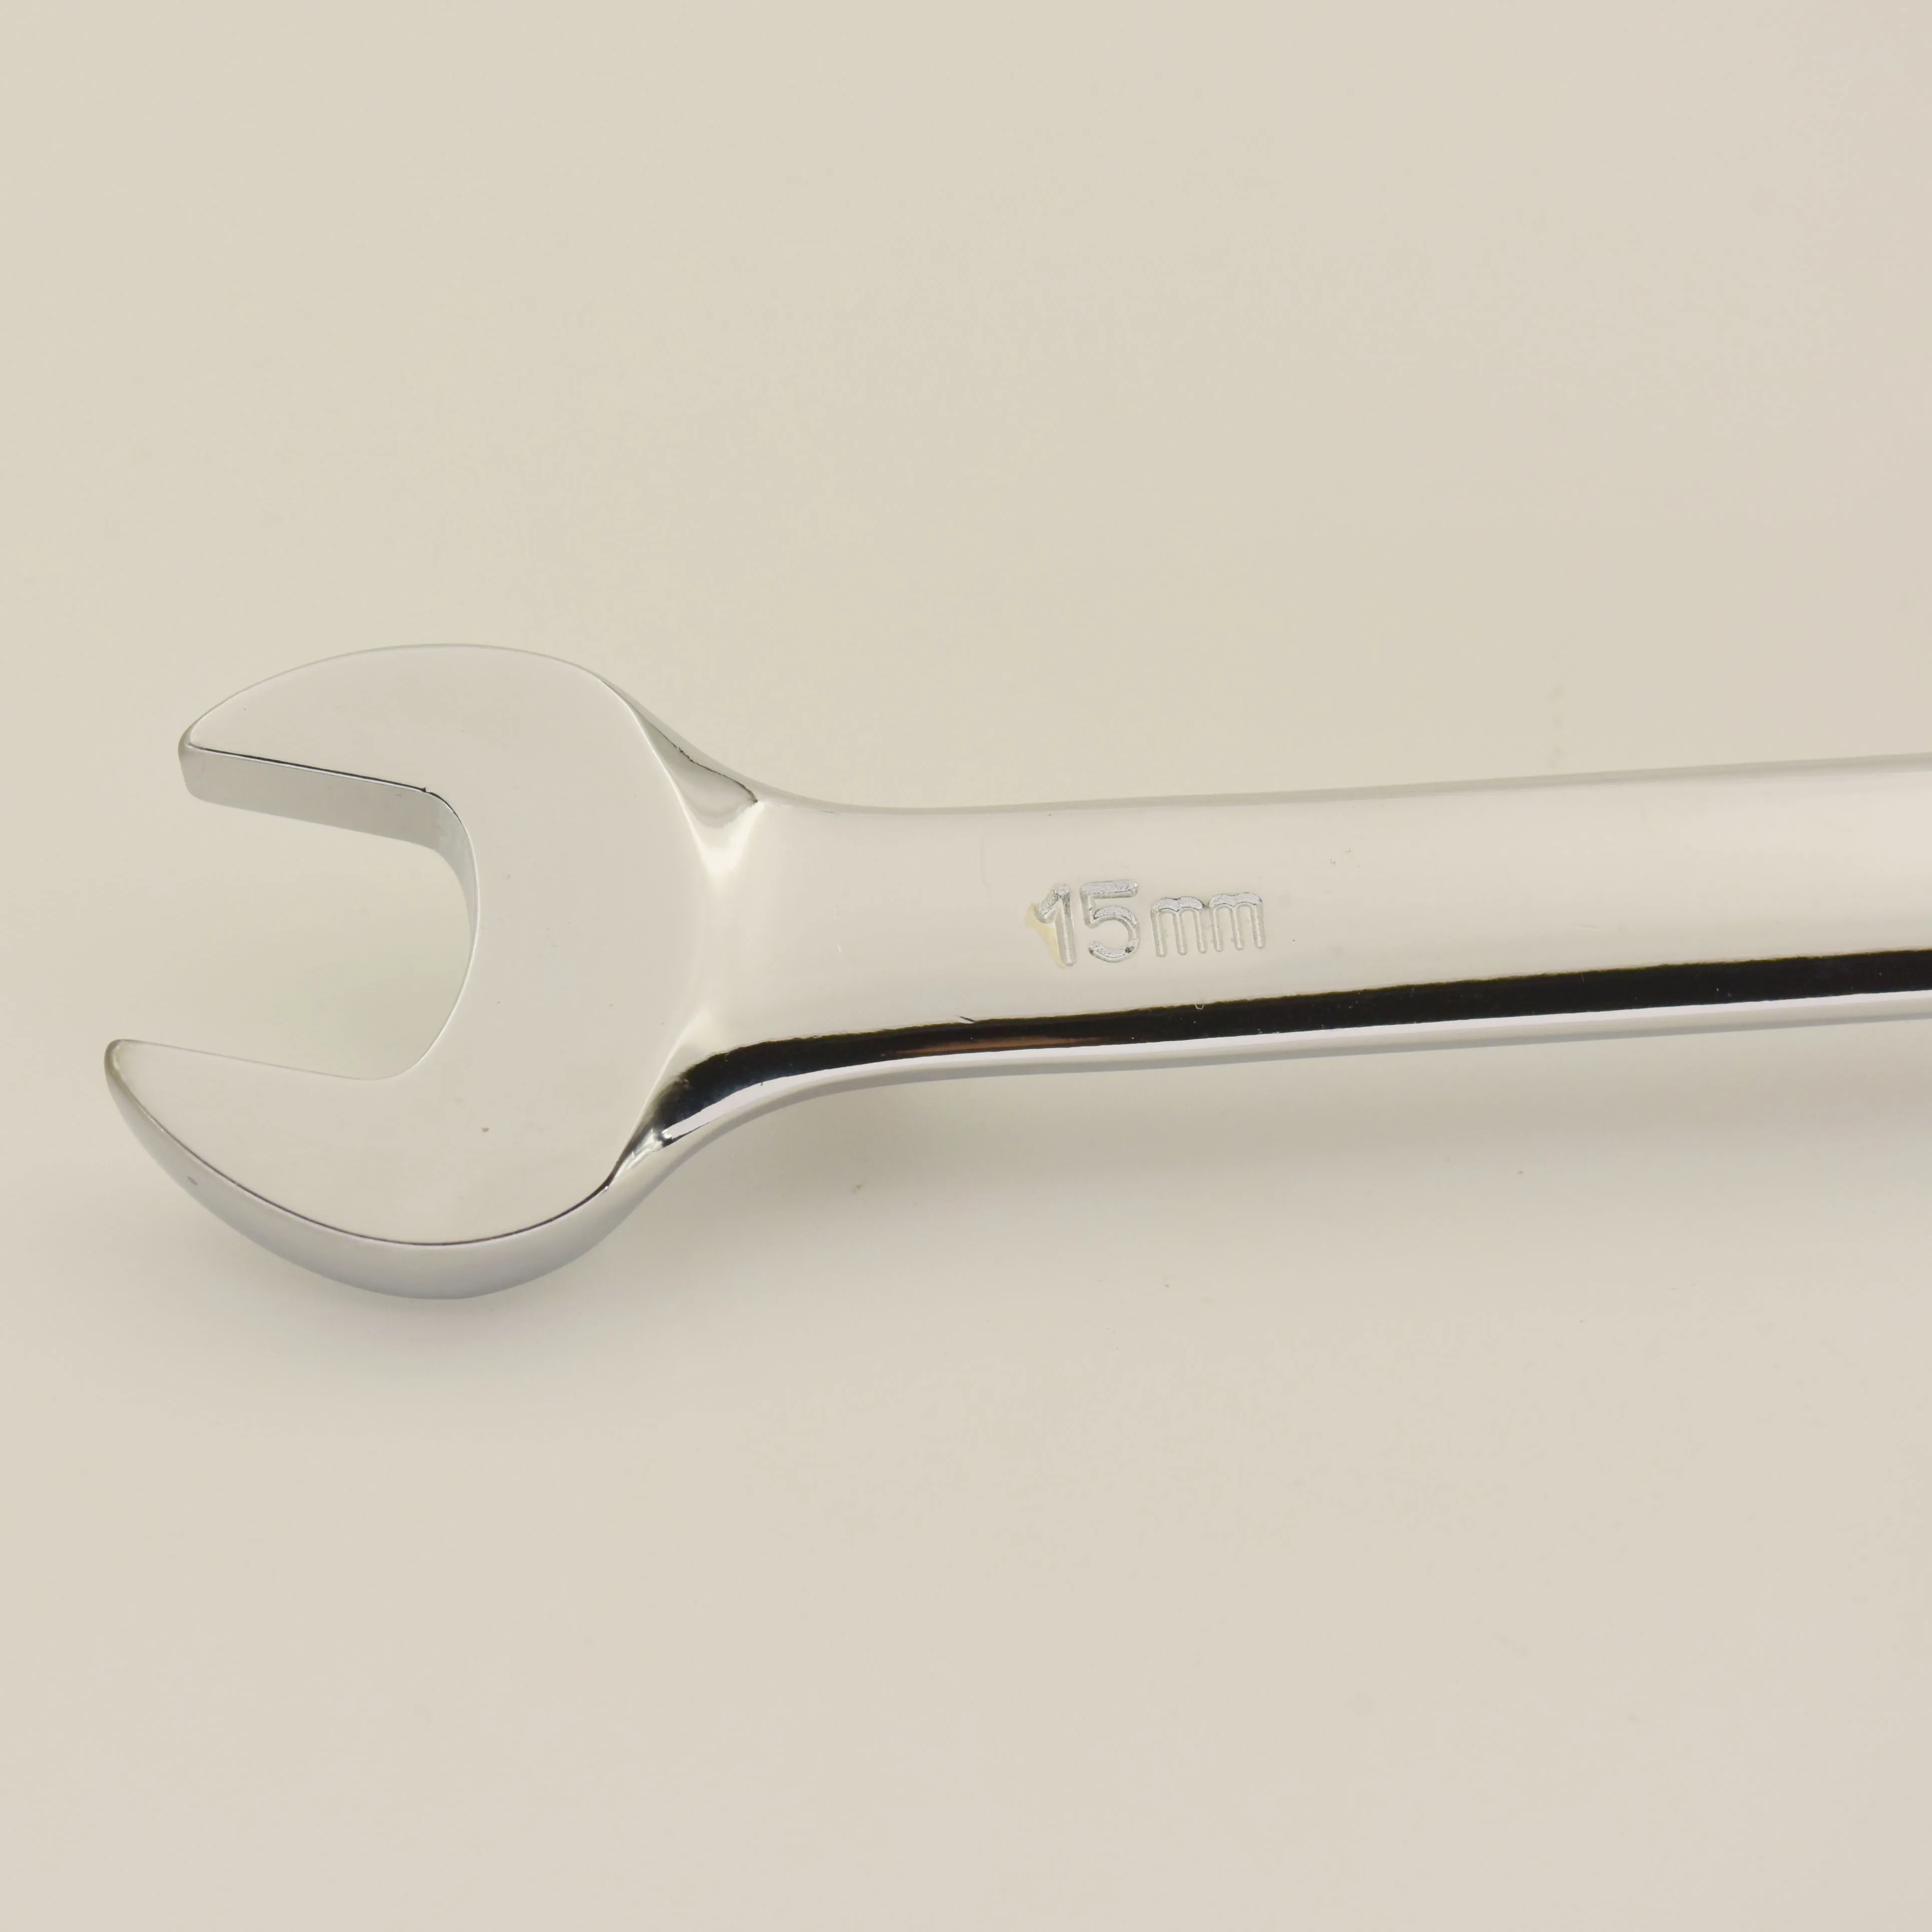 Оптовая продажа, популярный товар, полный длинный ручной инструмент 200 мм, прямая ручка, Трещоточный ключ 15 мм